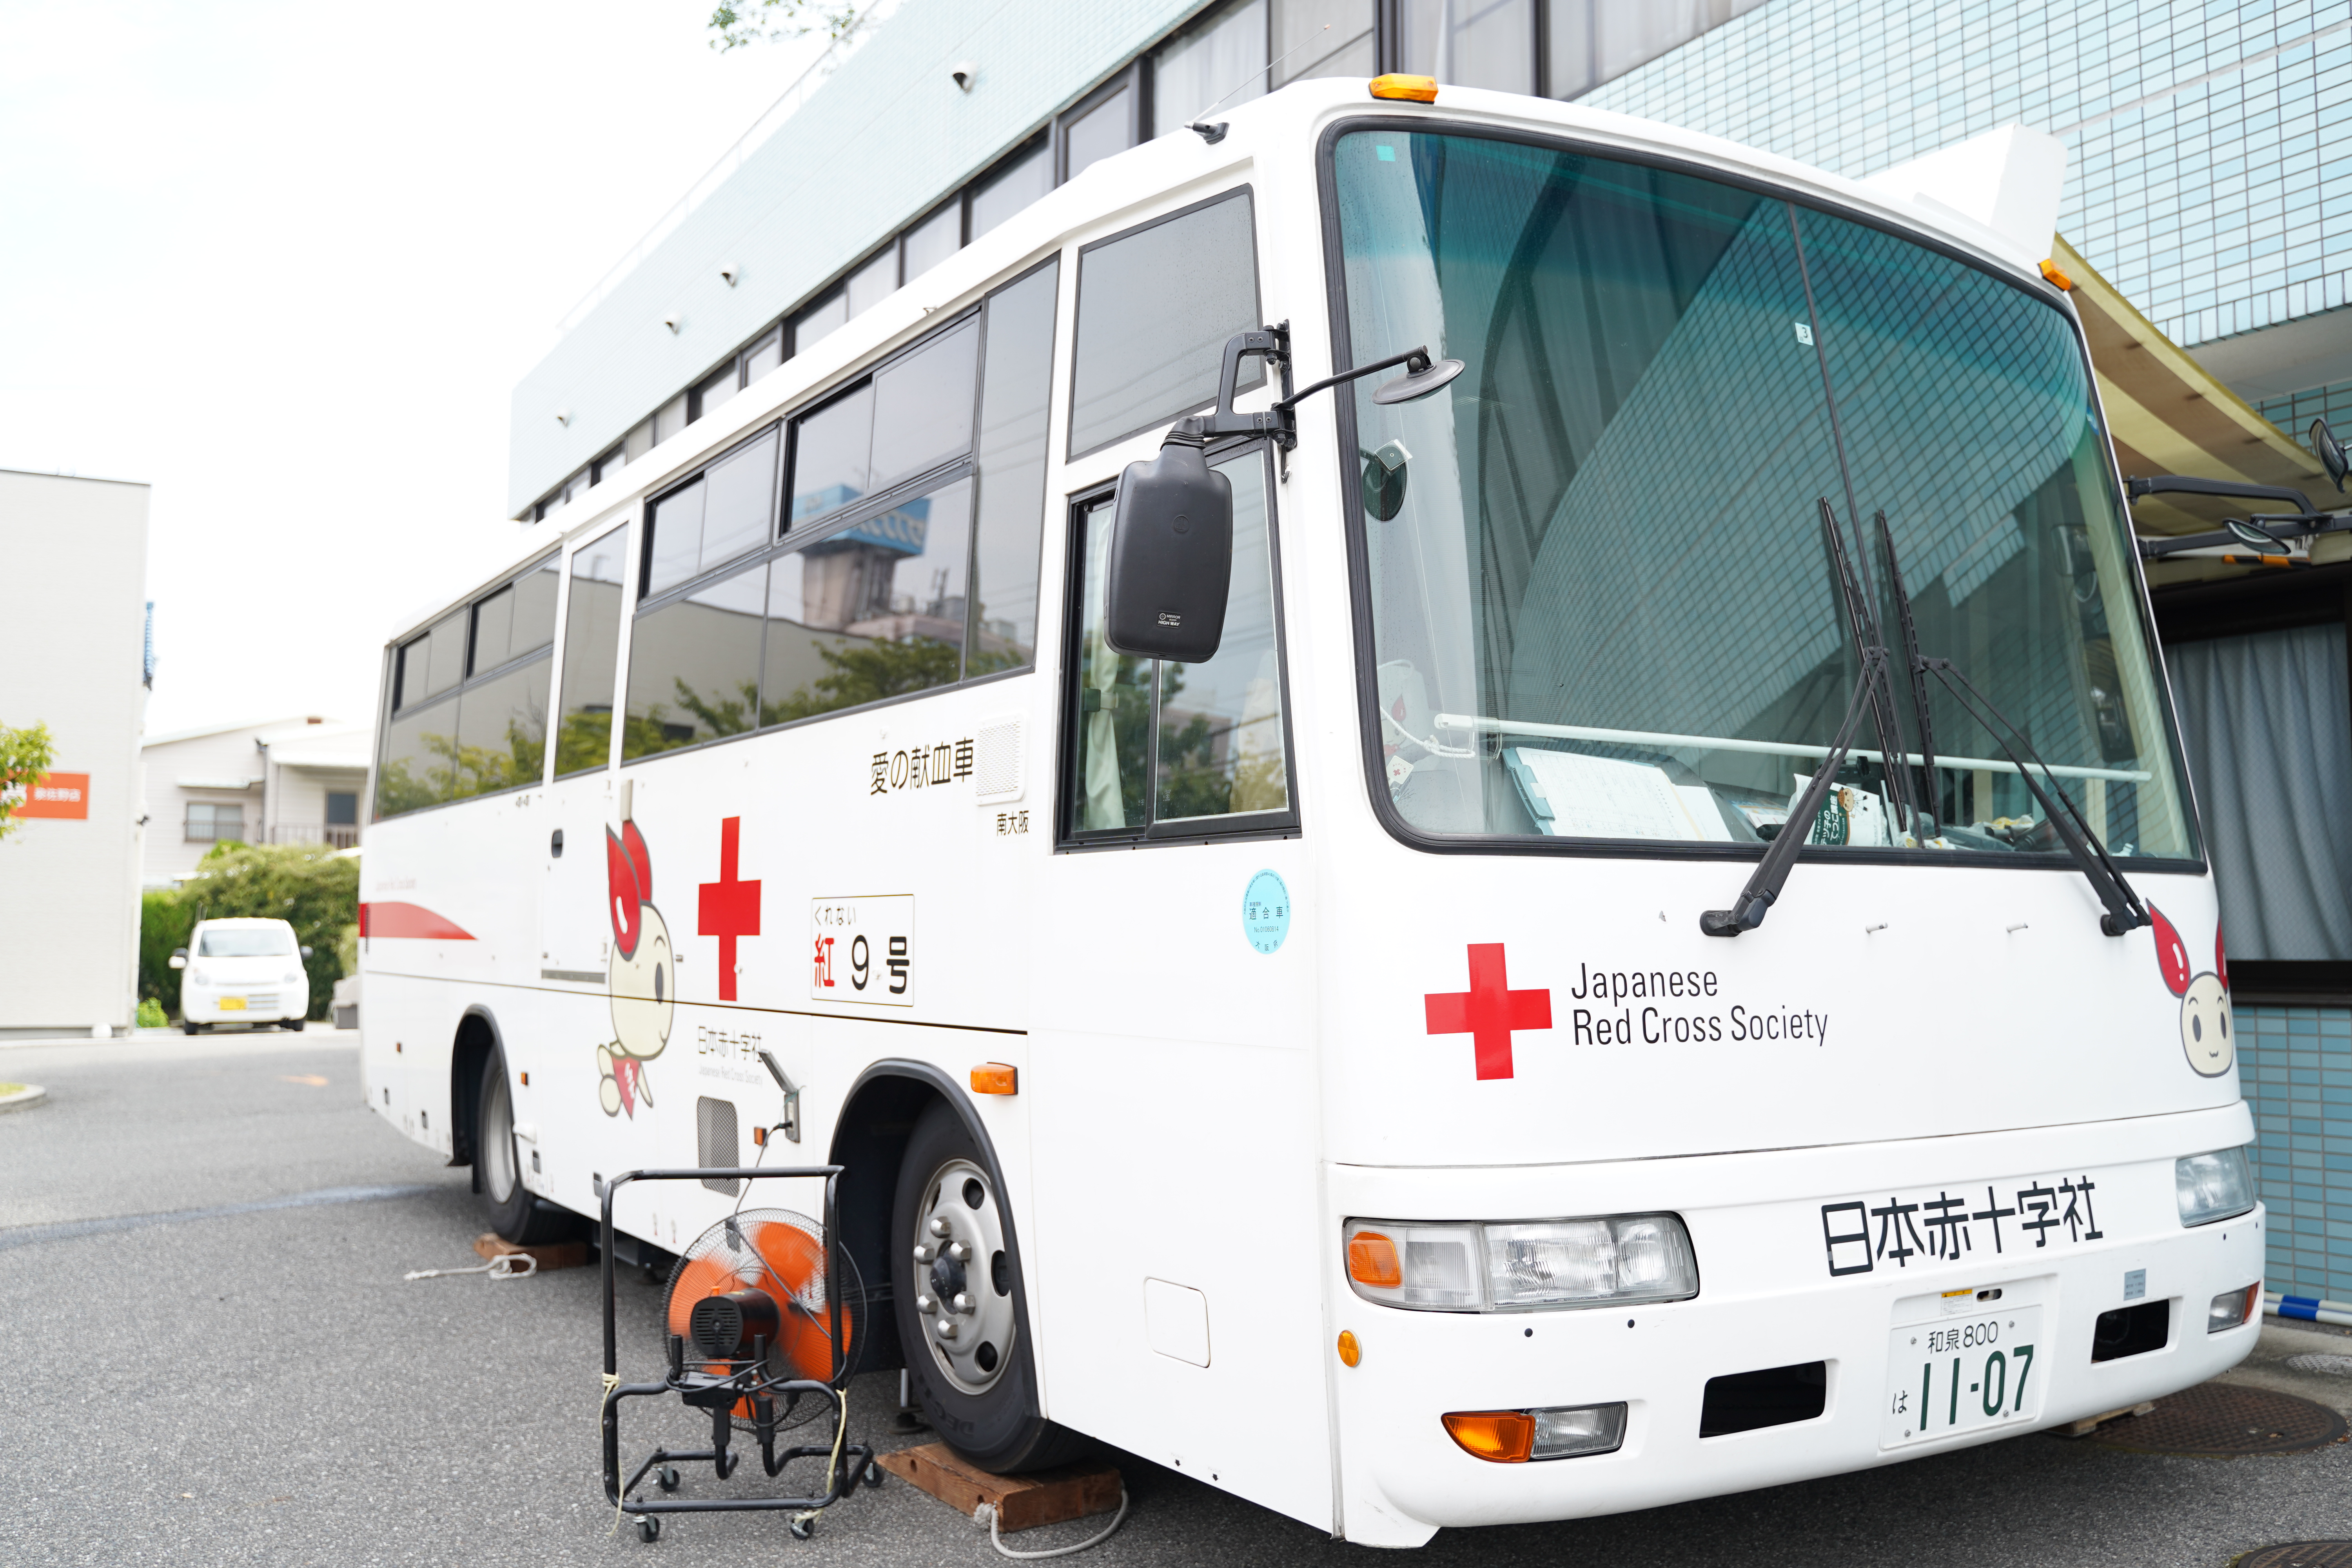 バス 献血 血液センター・献血ルーム・献血バスの違い